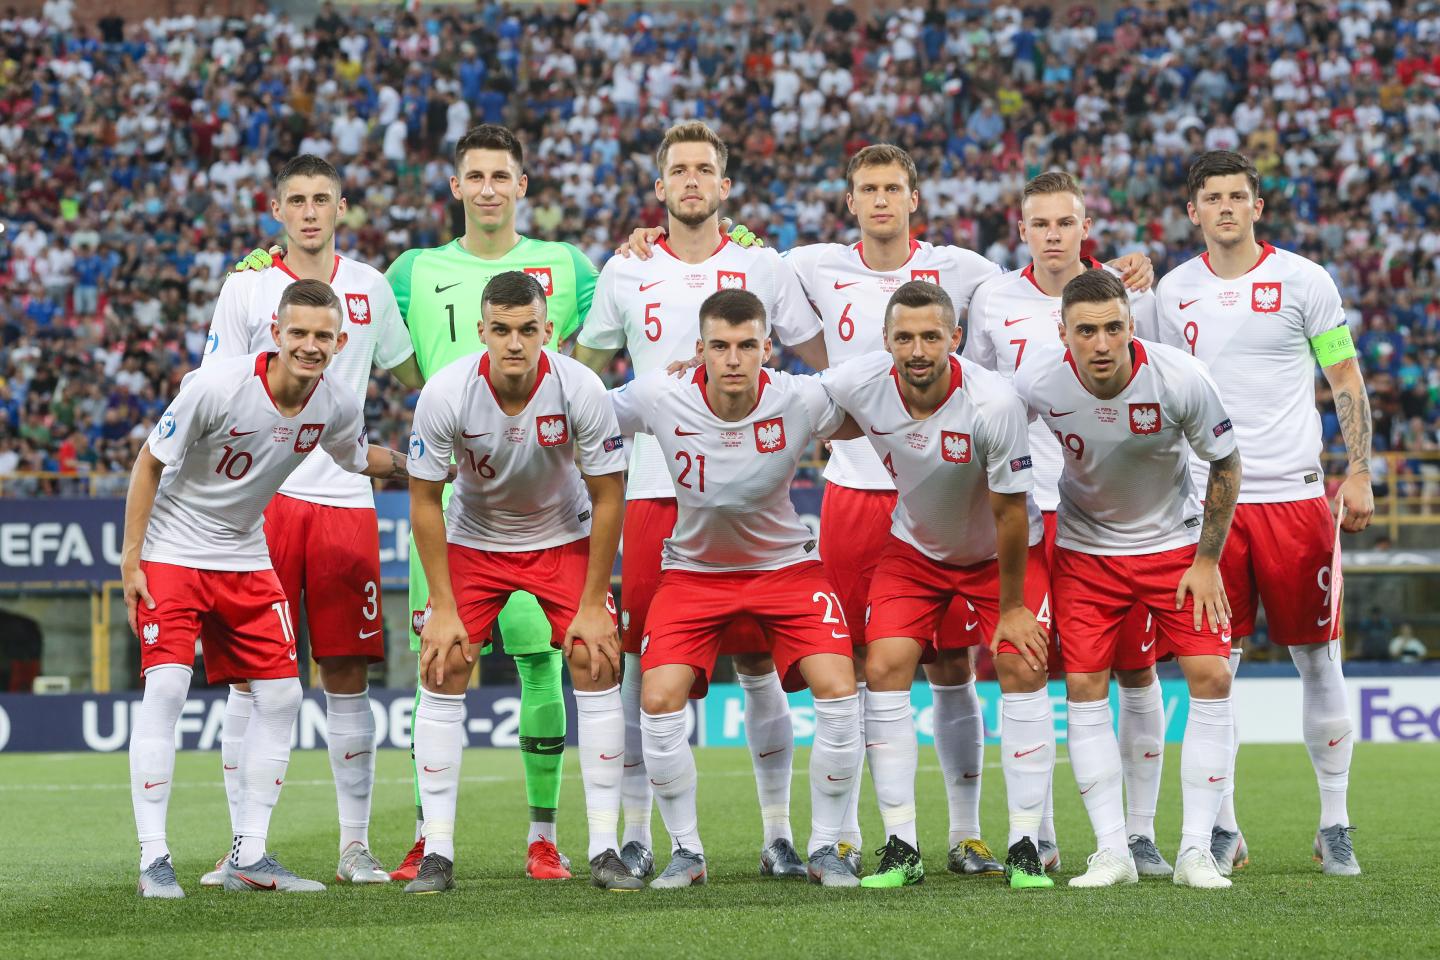 Reprezentacja Polski przed meczem z Włochami na młodzieżowych mistrzostwach Europy. Polacy w białych koszulkach z czerwonym kołnierzykiem oraz czerwonych spodenkach.